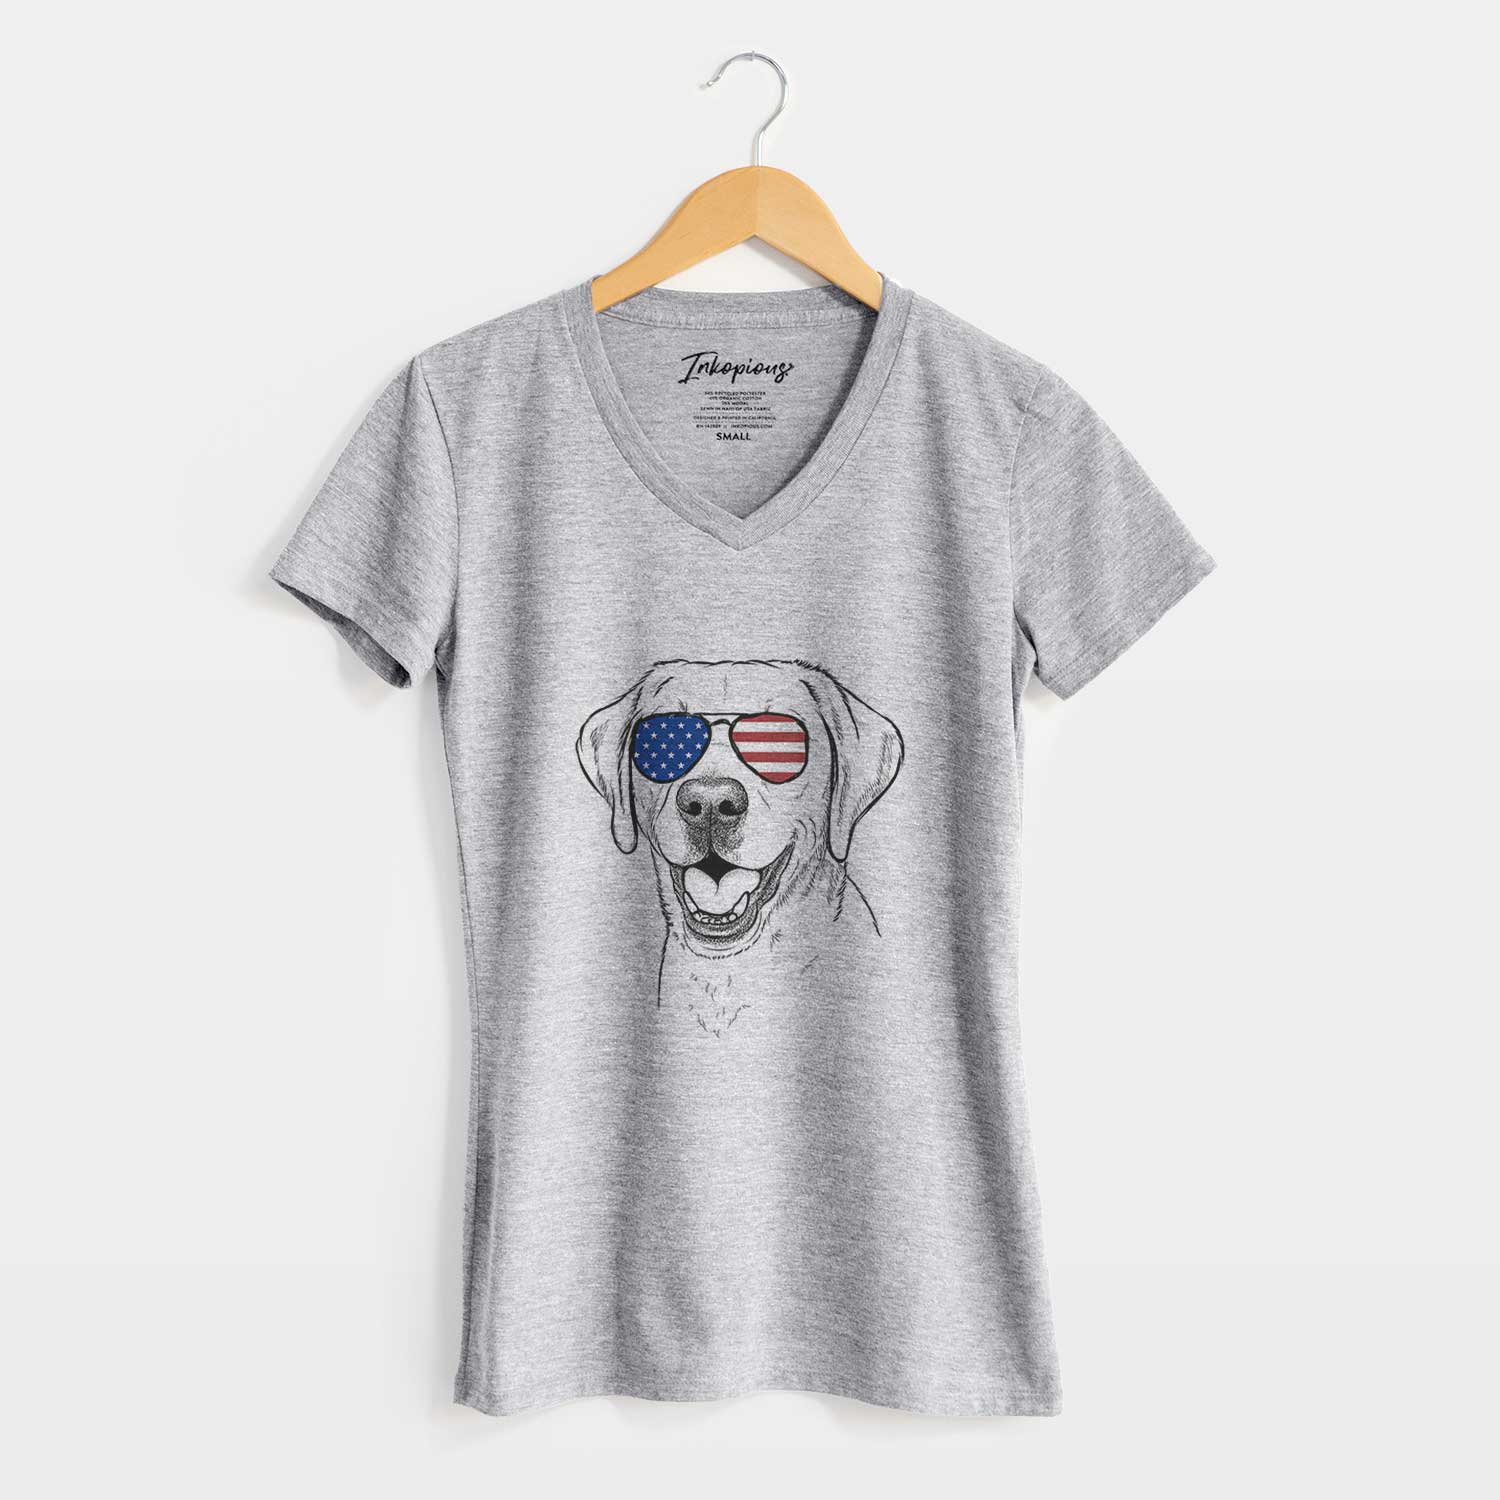 USA Nate the Labrador Retriever - Women's Perfect V-neck Shirt